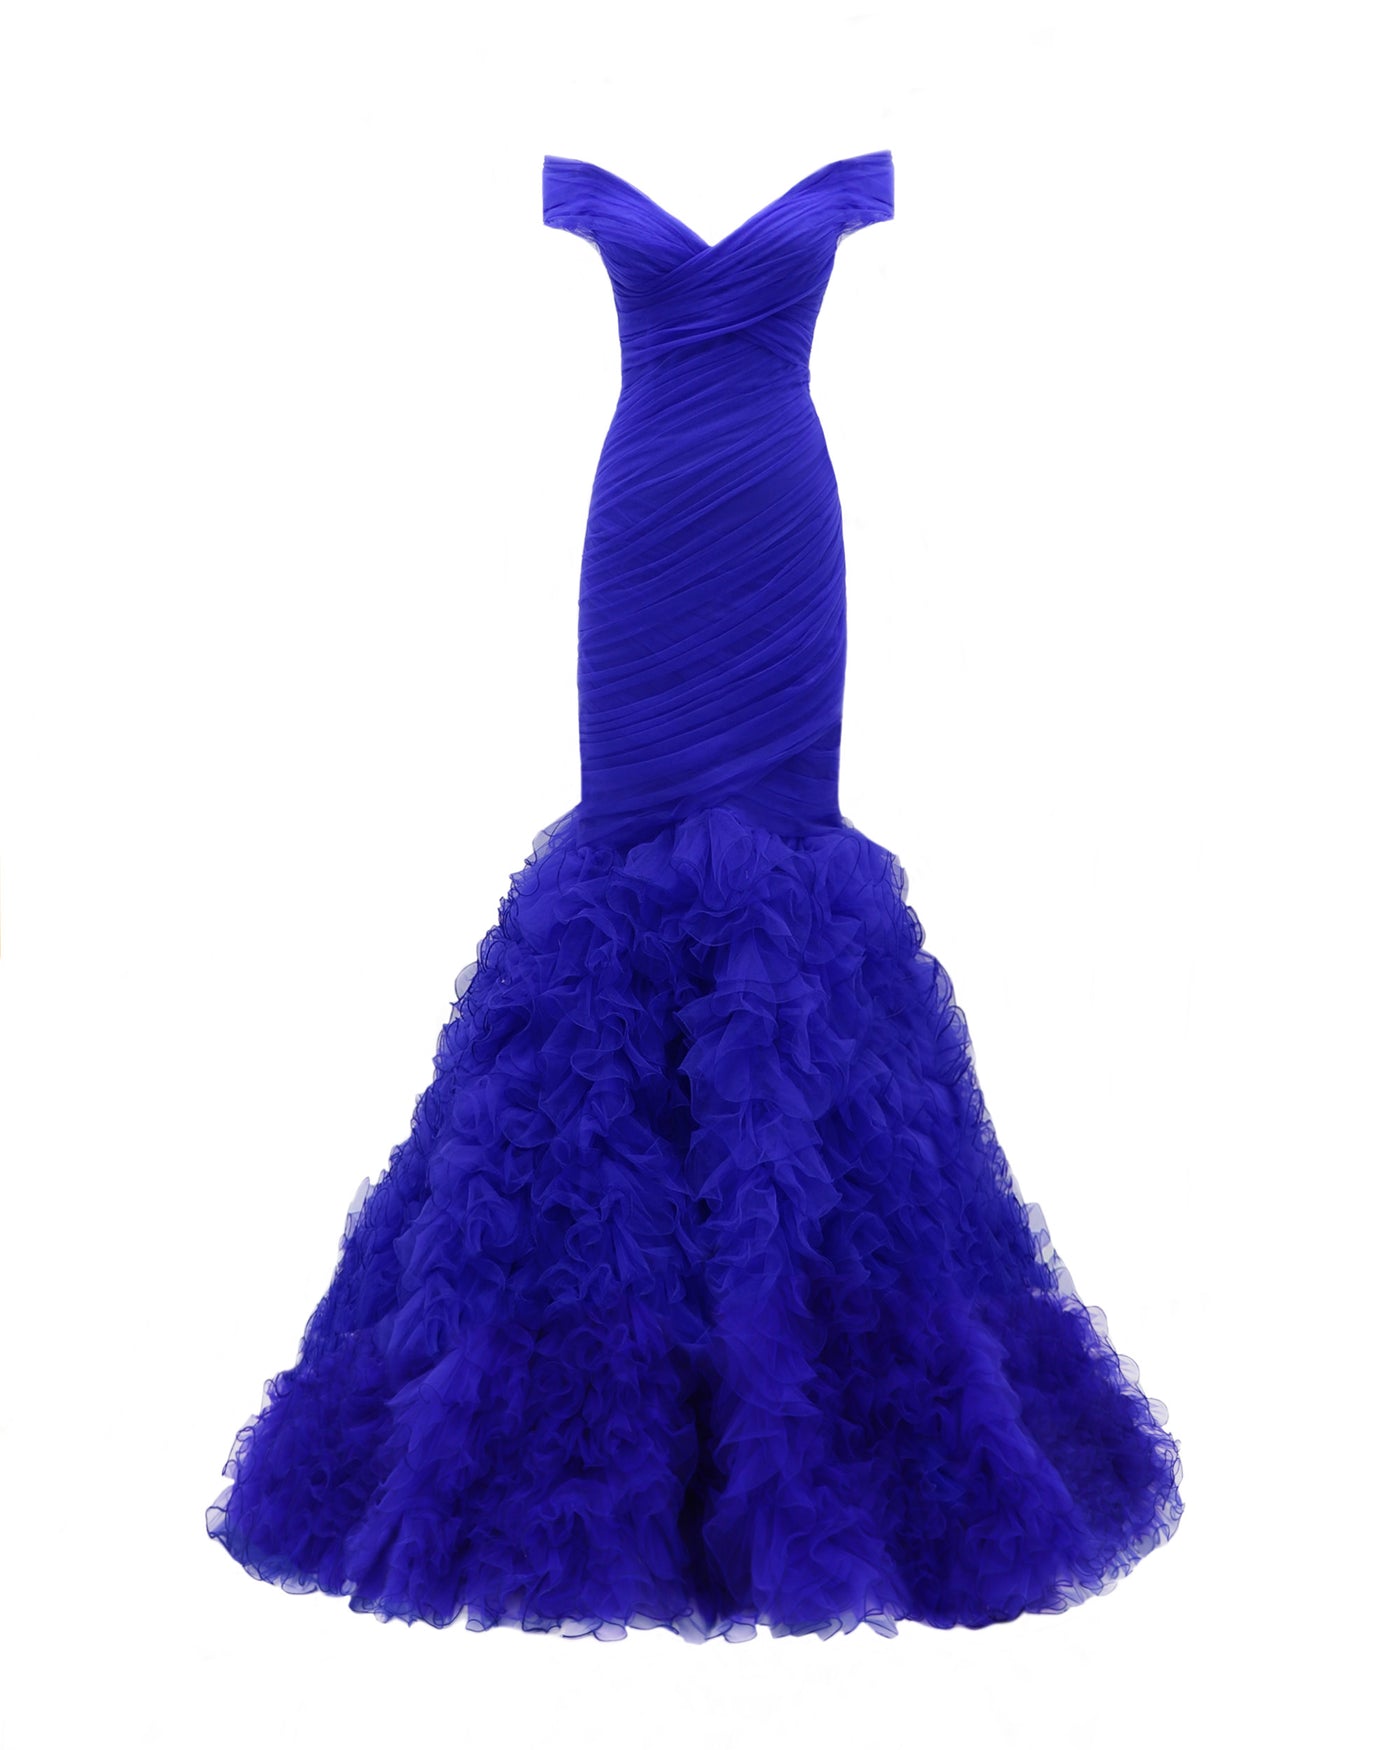 Draped Mermaid-Cut Royal Blue Dress